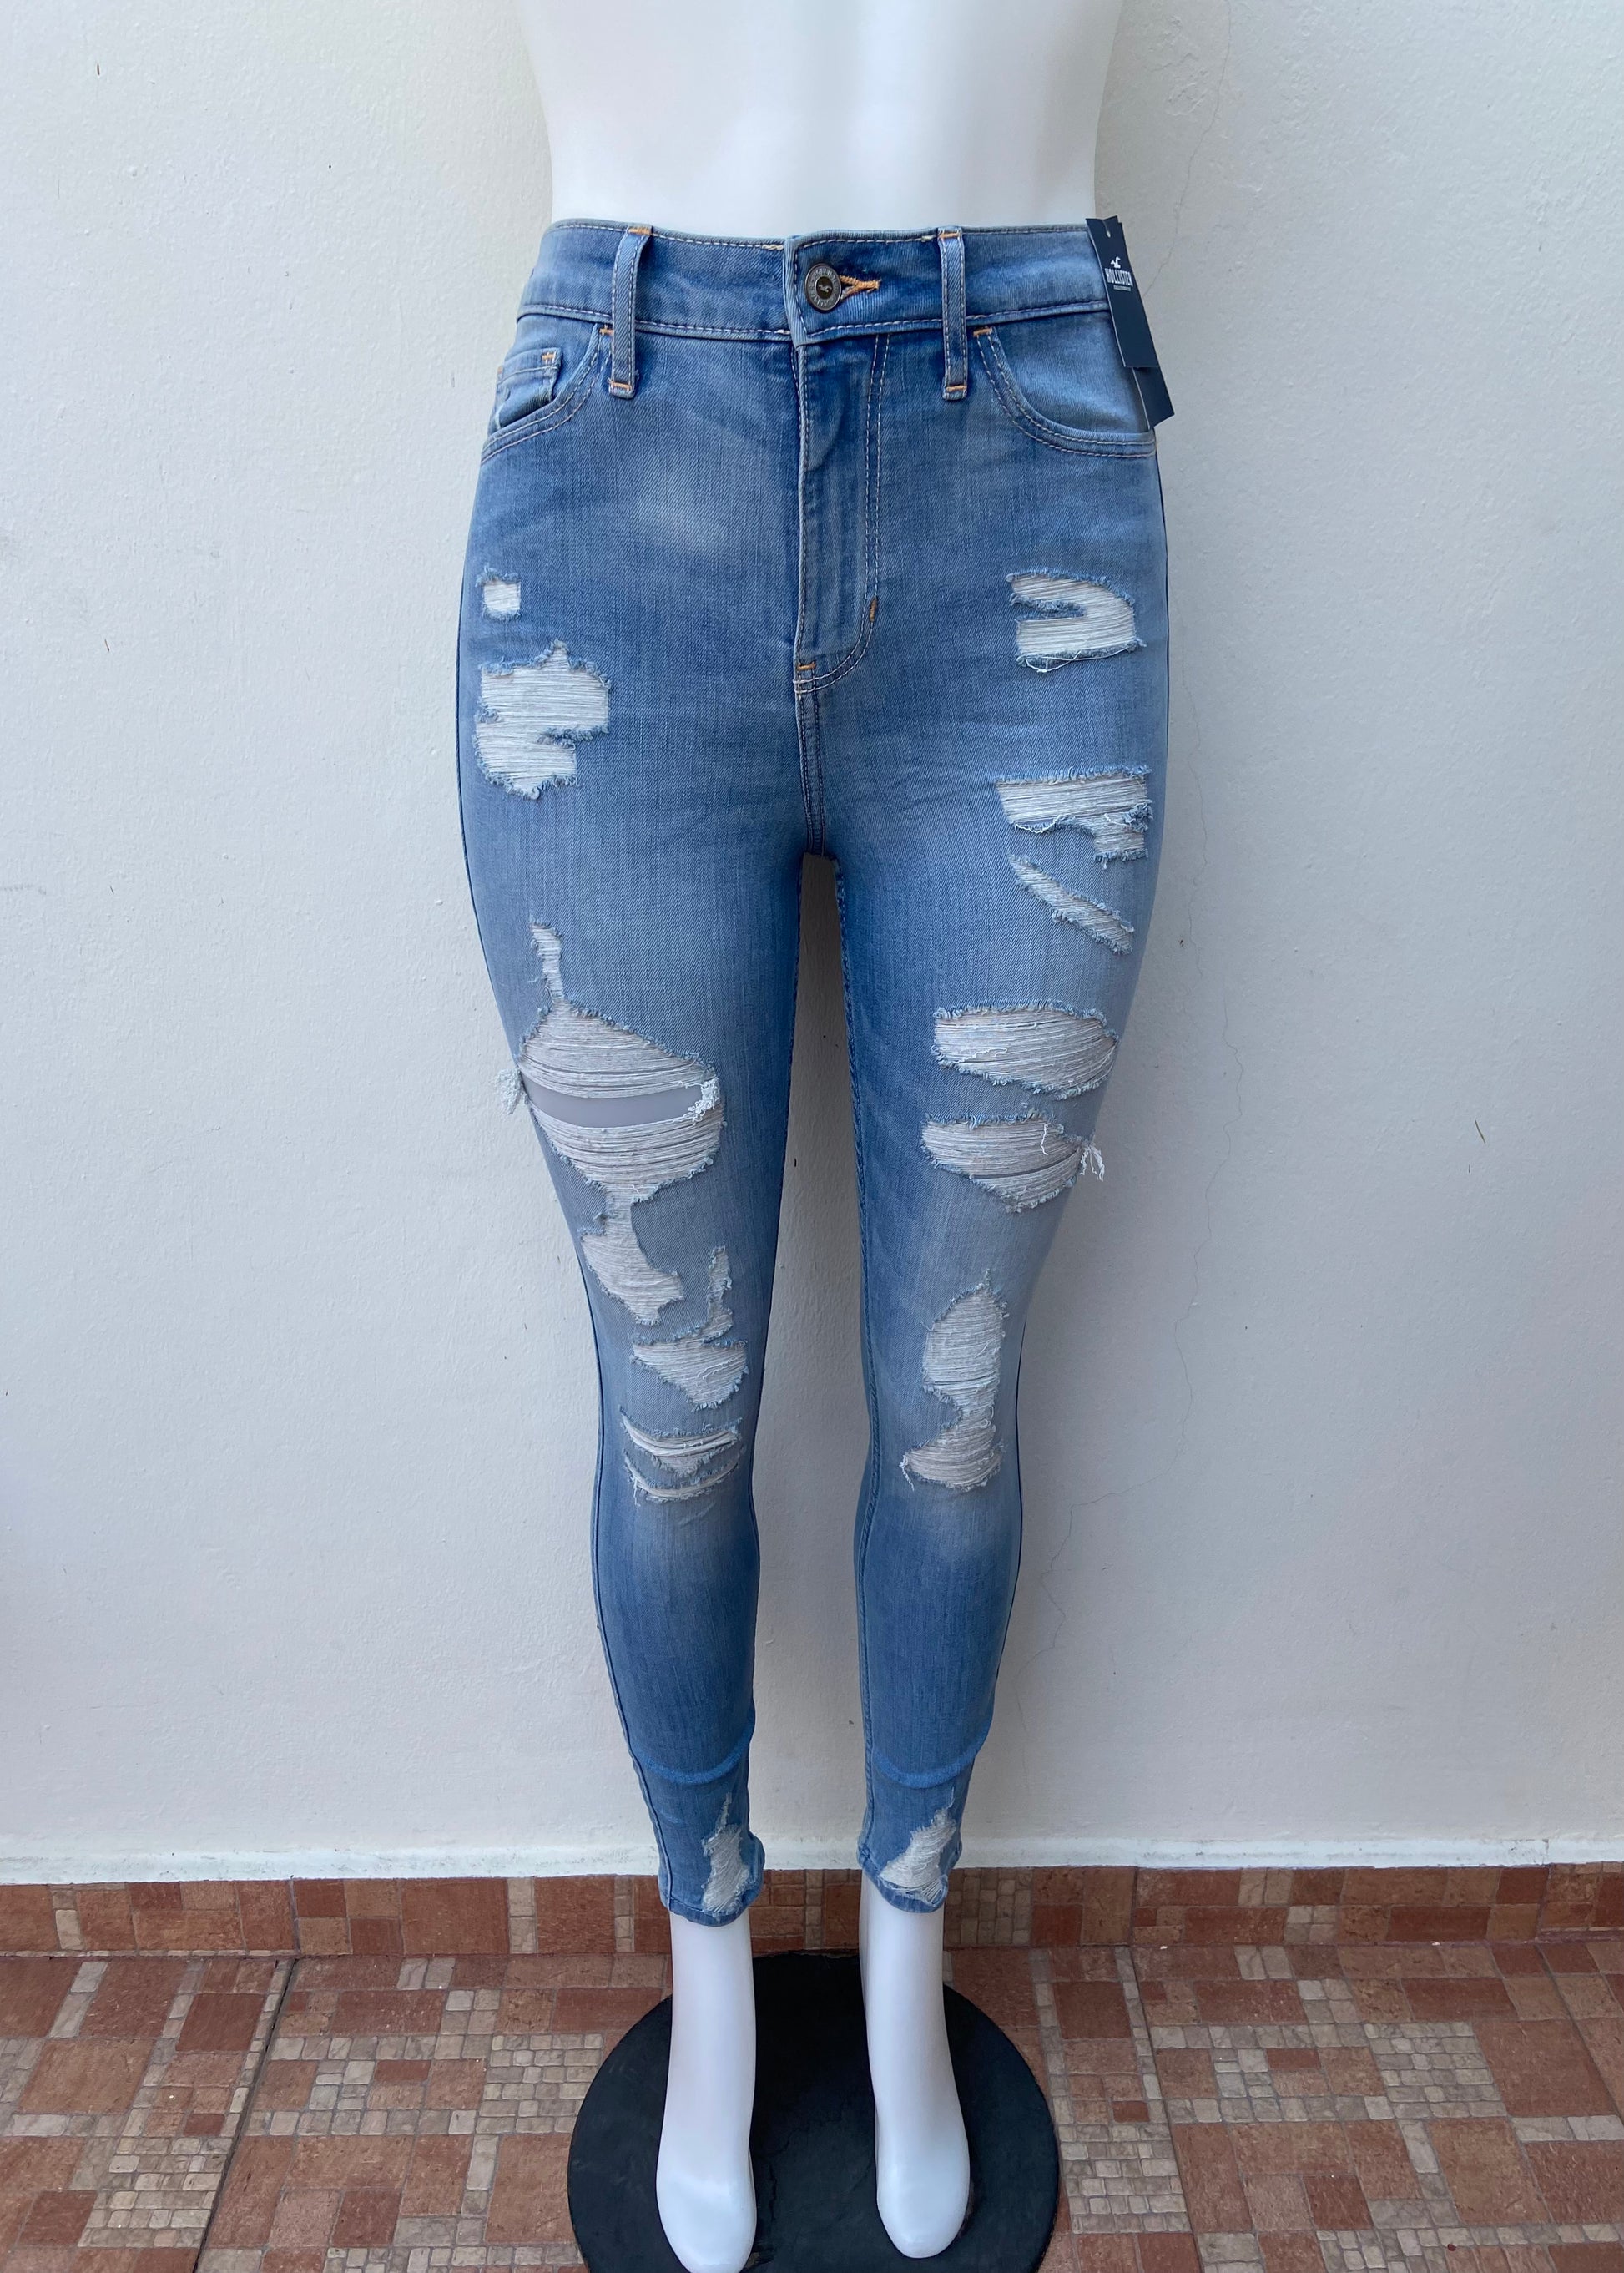 Pantalón Jeans Hollister original, azul claro con rasgados, CURVY